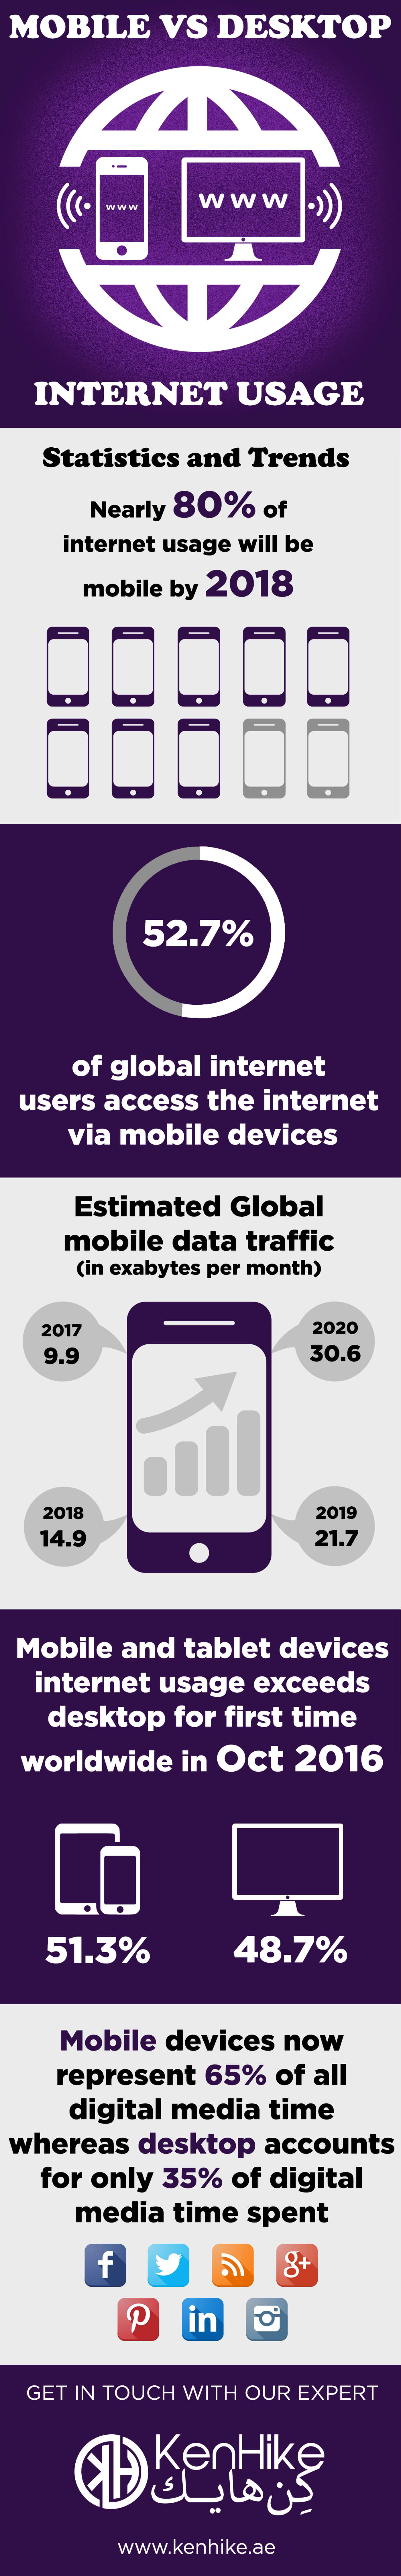 Mobile Vs Desktop Internet Usage